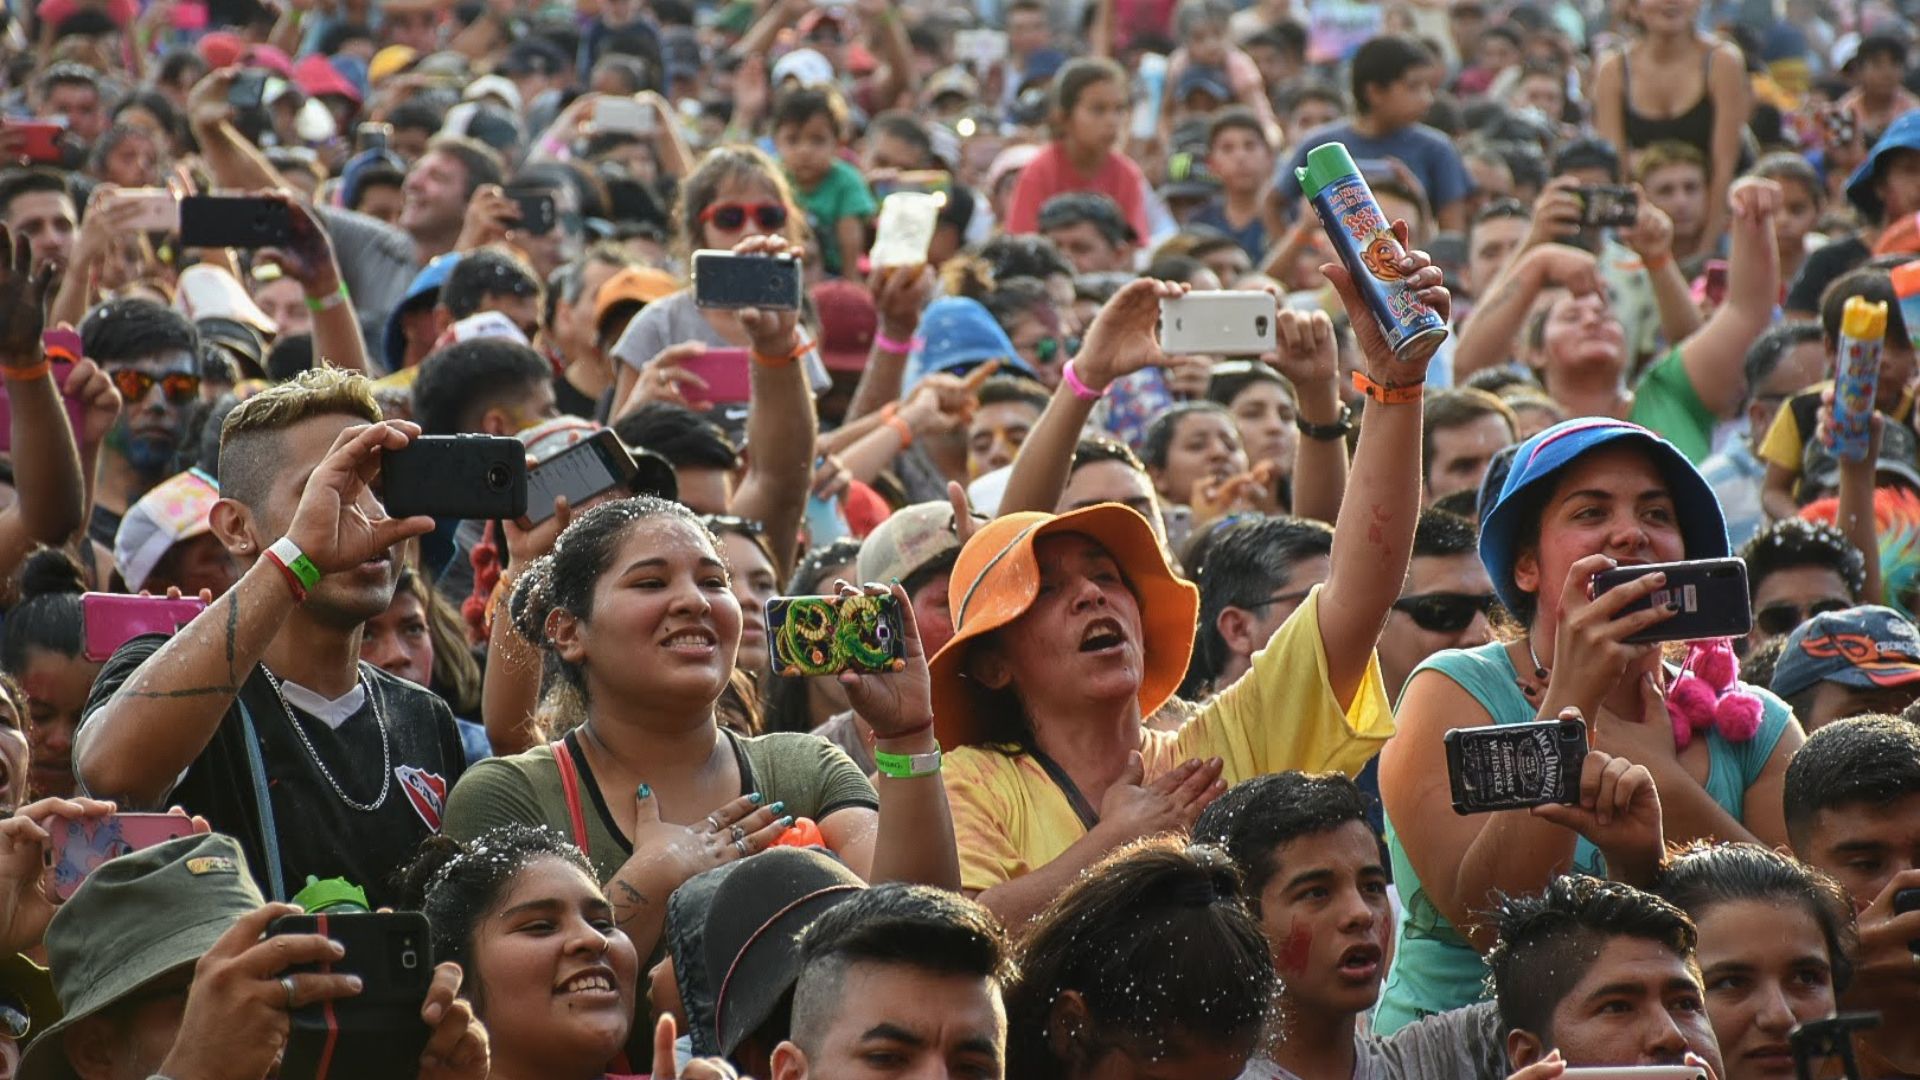 Los shows musicales en vivo son un elemento característico del Carnaval en Salta (Ministerio de Turismo y Deportes de la Nación)